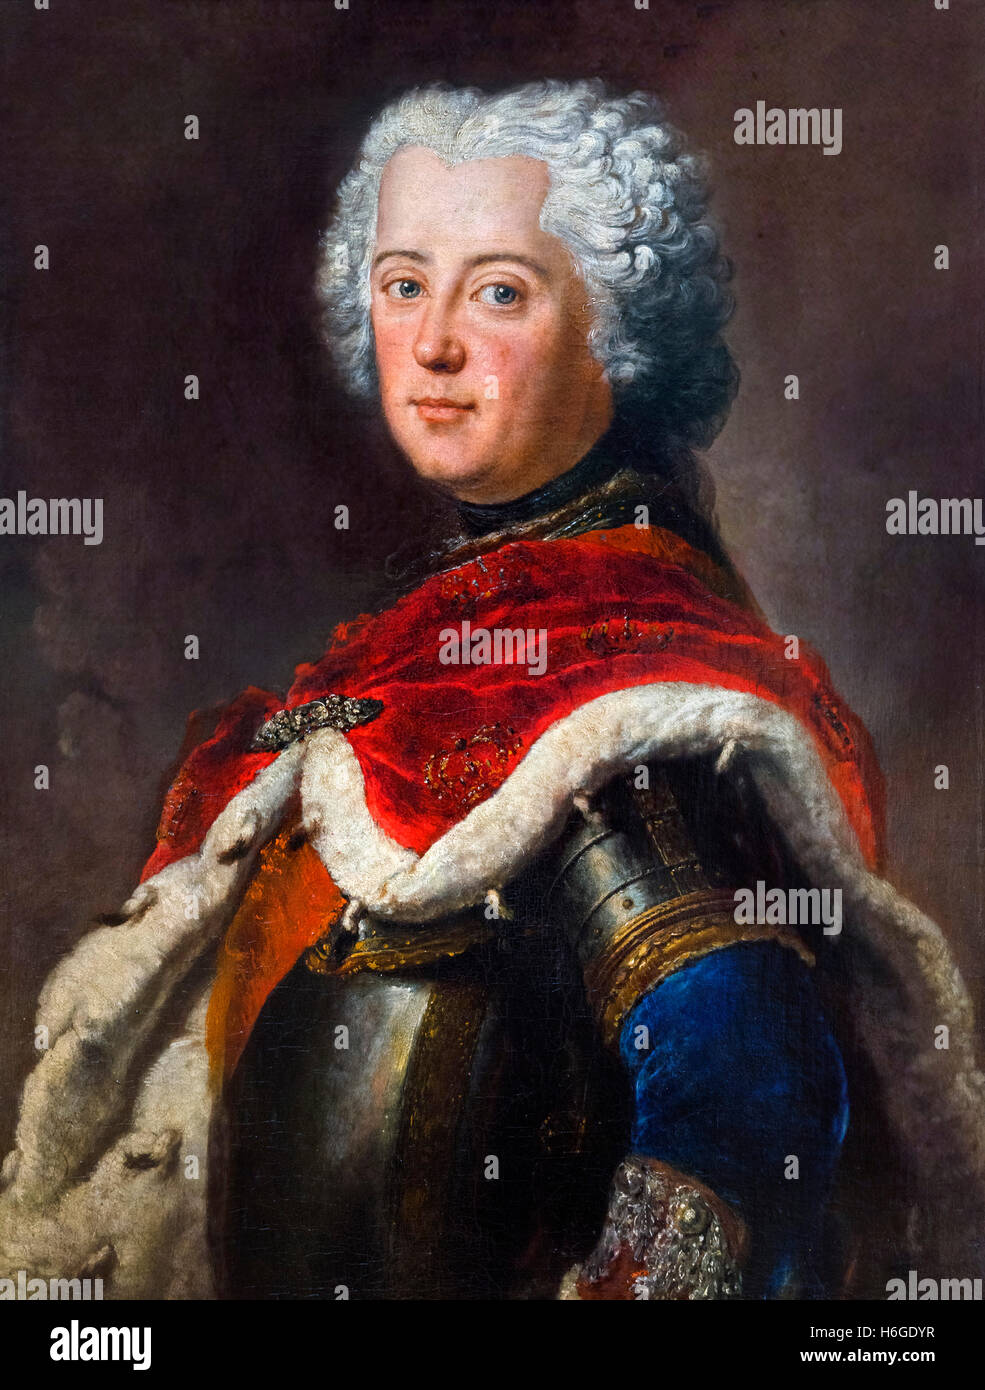 Friedrich der große (Friedrich der Große:1712-1786) als Kronprinz. Porträt von Antoine Pesne, Öl auf Leinwand, c.1739. Friedrich II. wurde König von Preußen von 1740 bis zu seinem Tod im Jahre 1786 Stockfoto